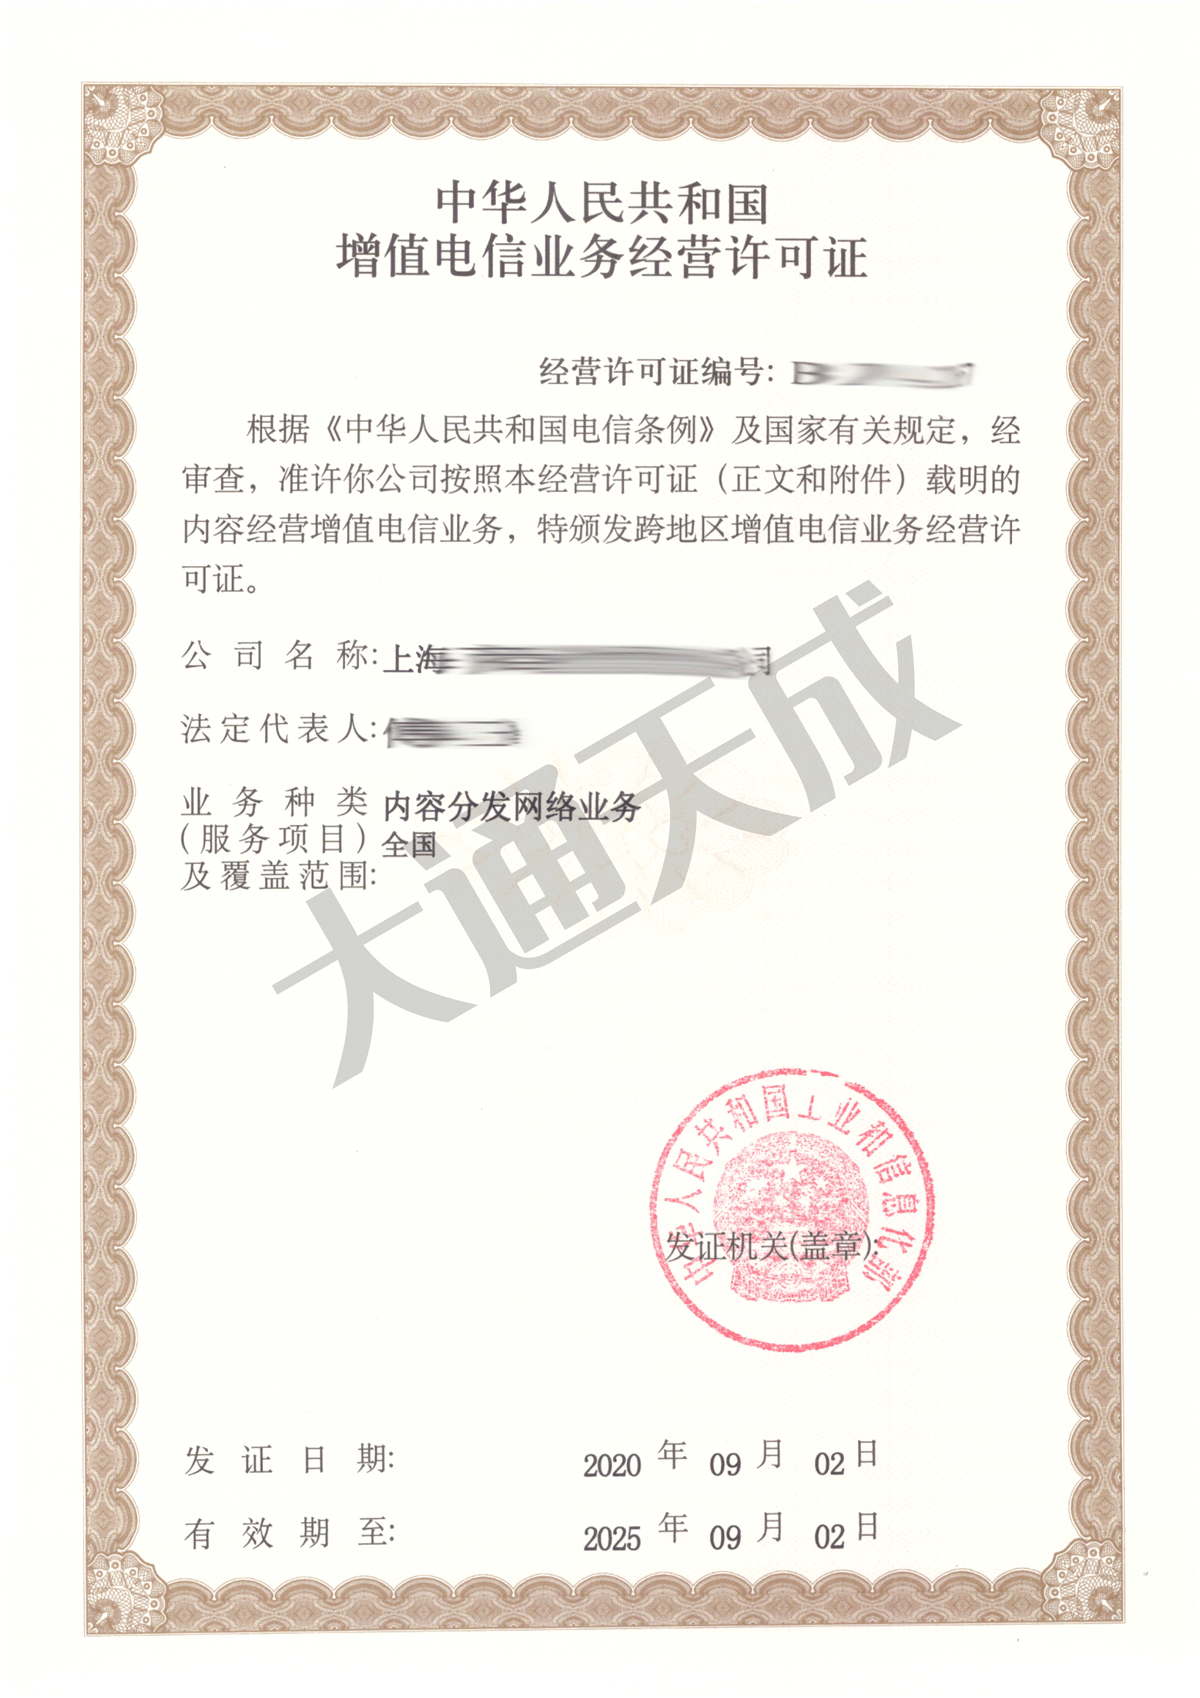 CDN许可证是指什么「办理浙江cdn经营许可证」